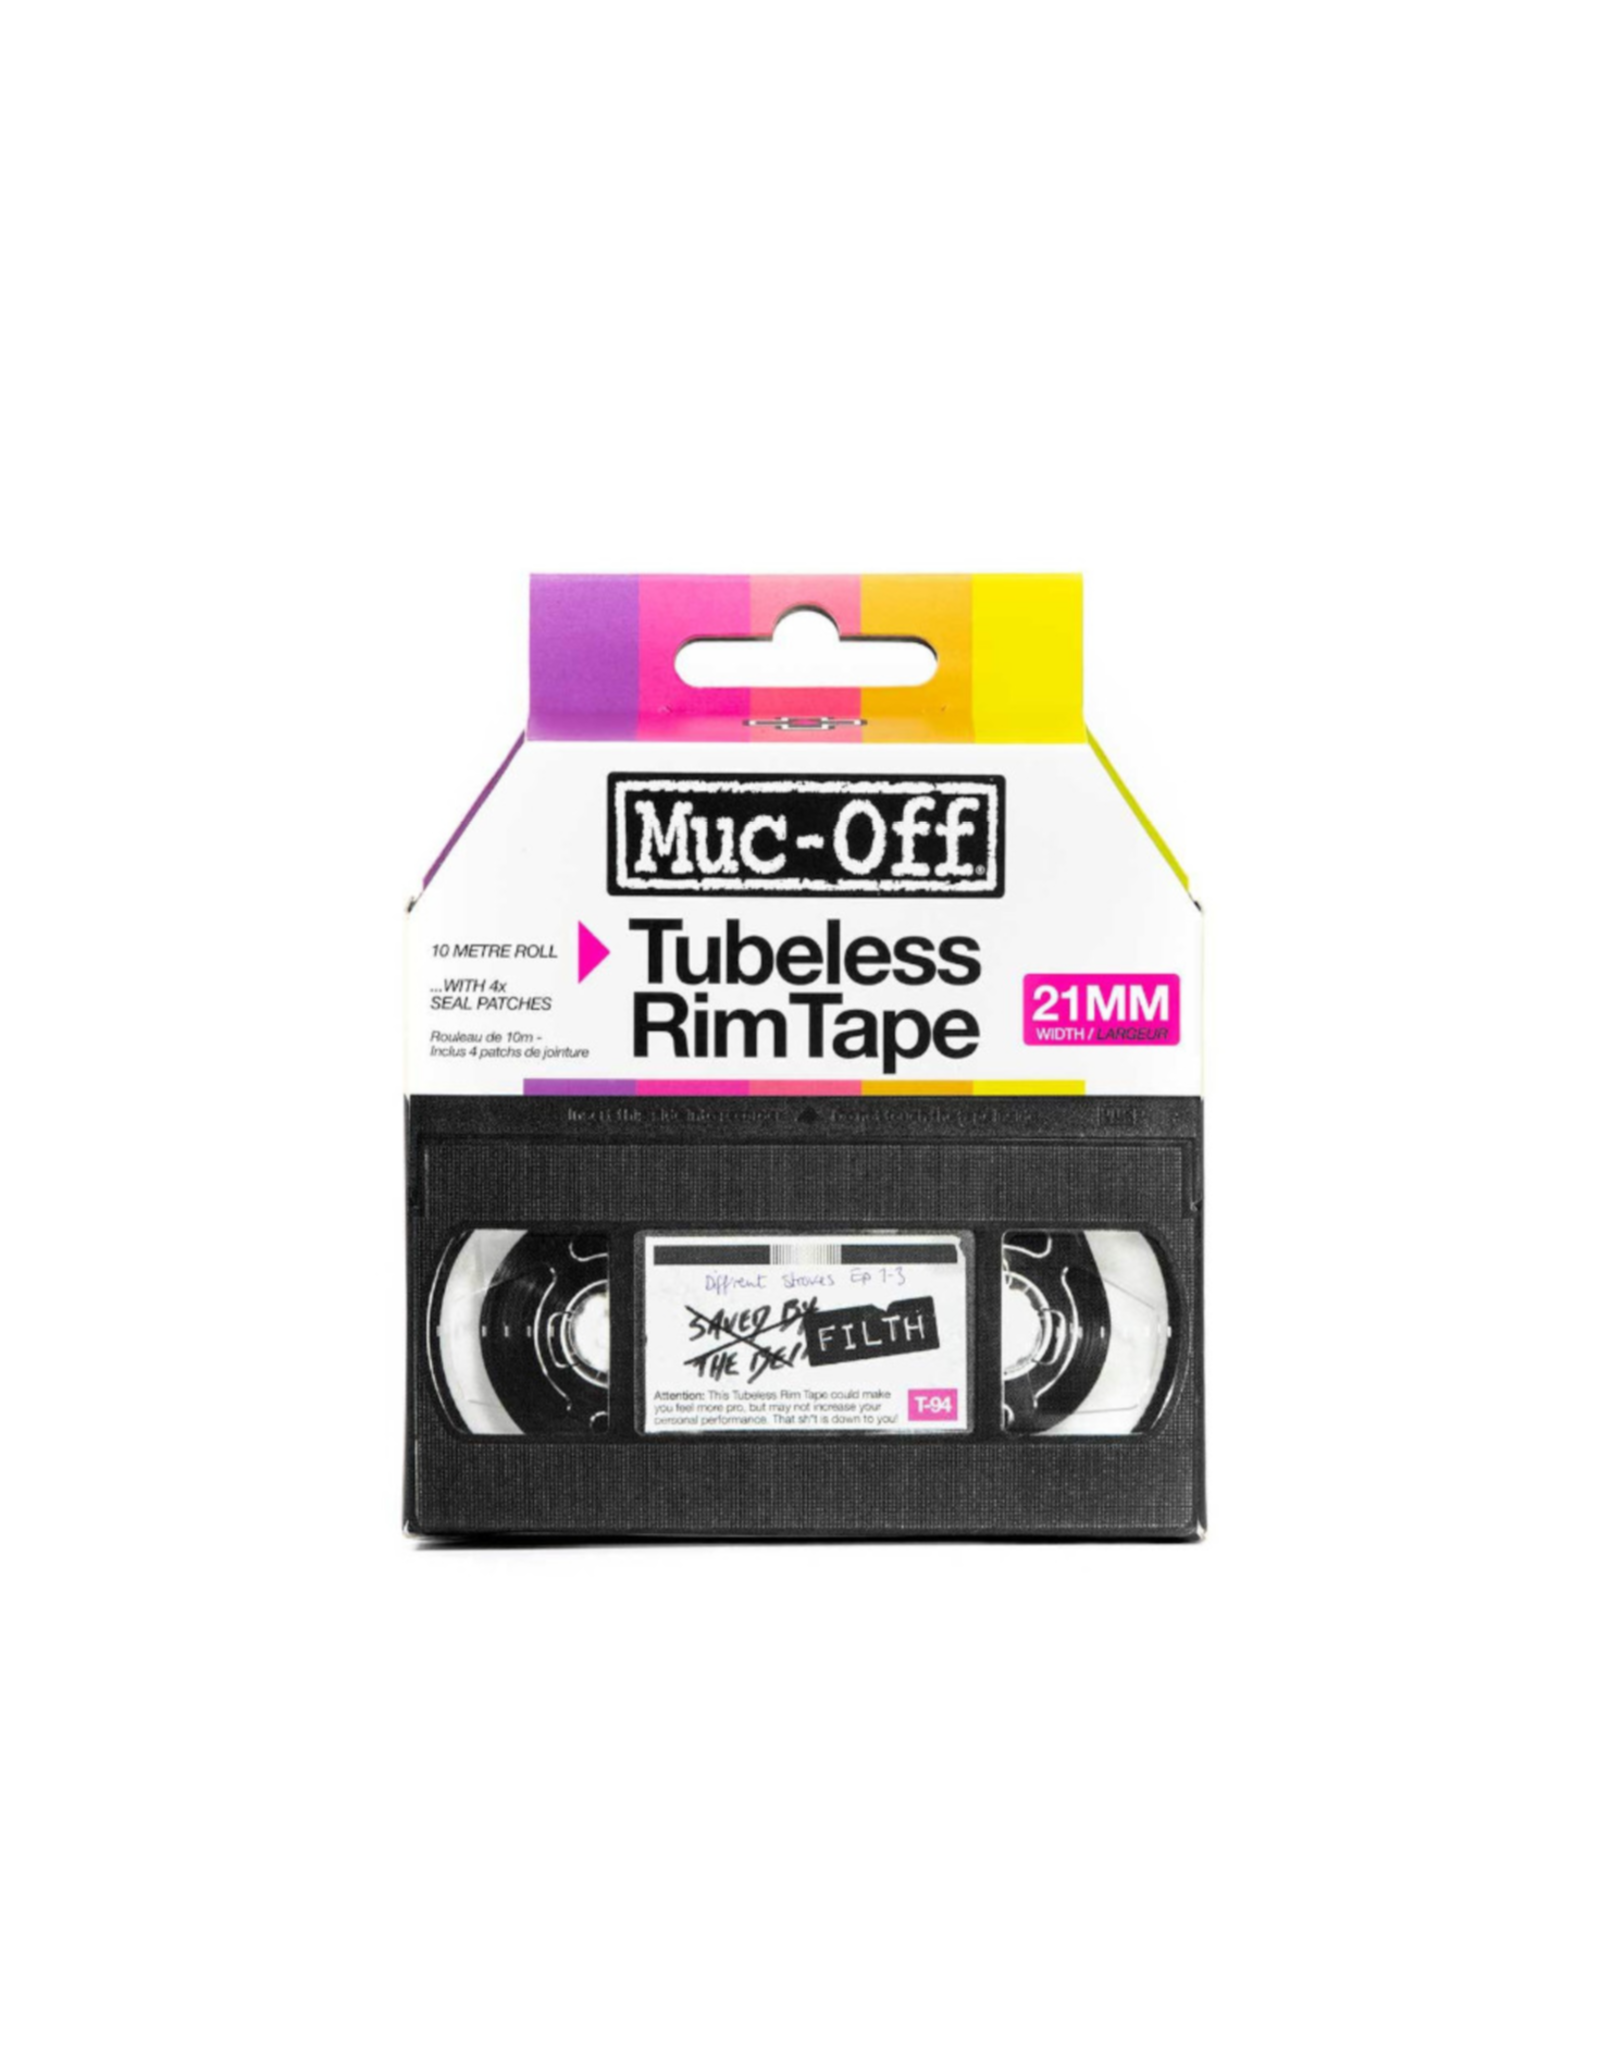 MUC-OFF Muc-Off, Tubeless Rim Tape, 10m, 21mm